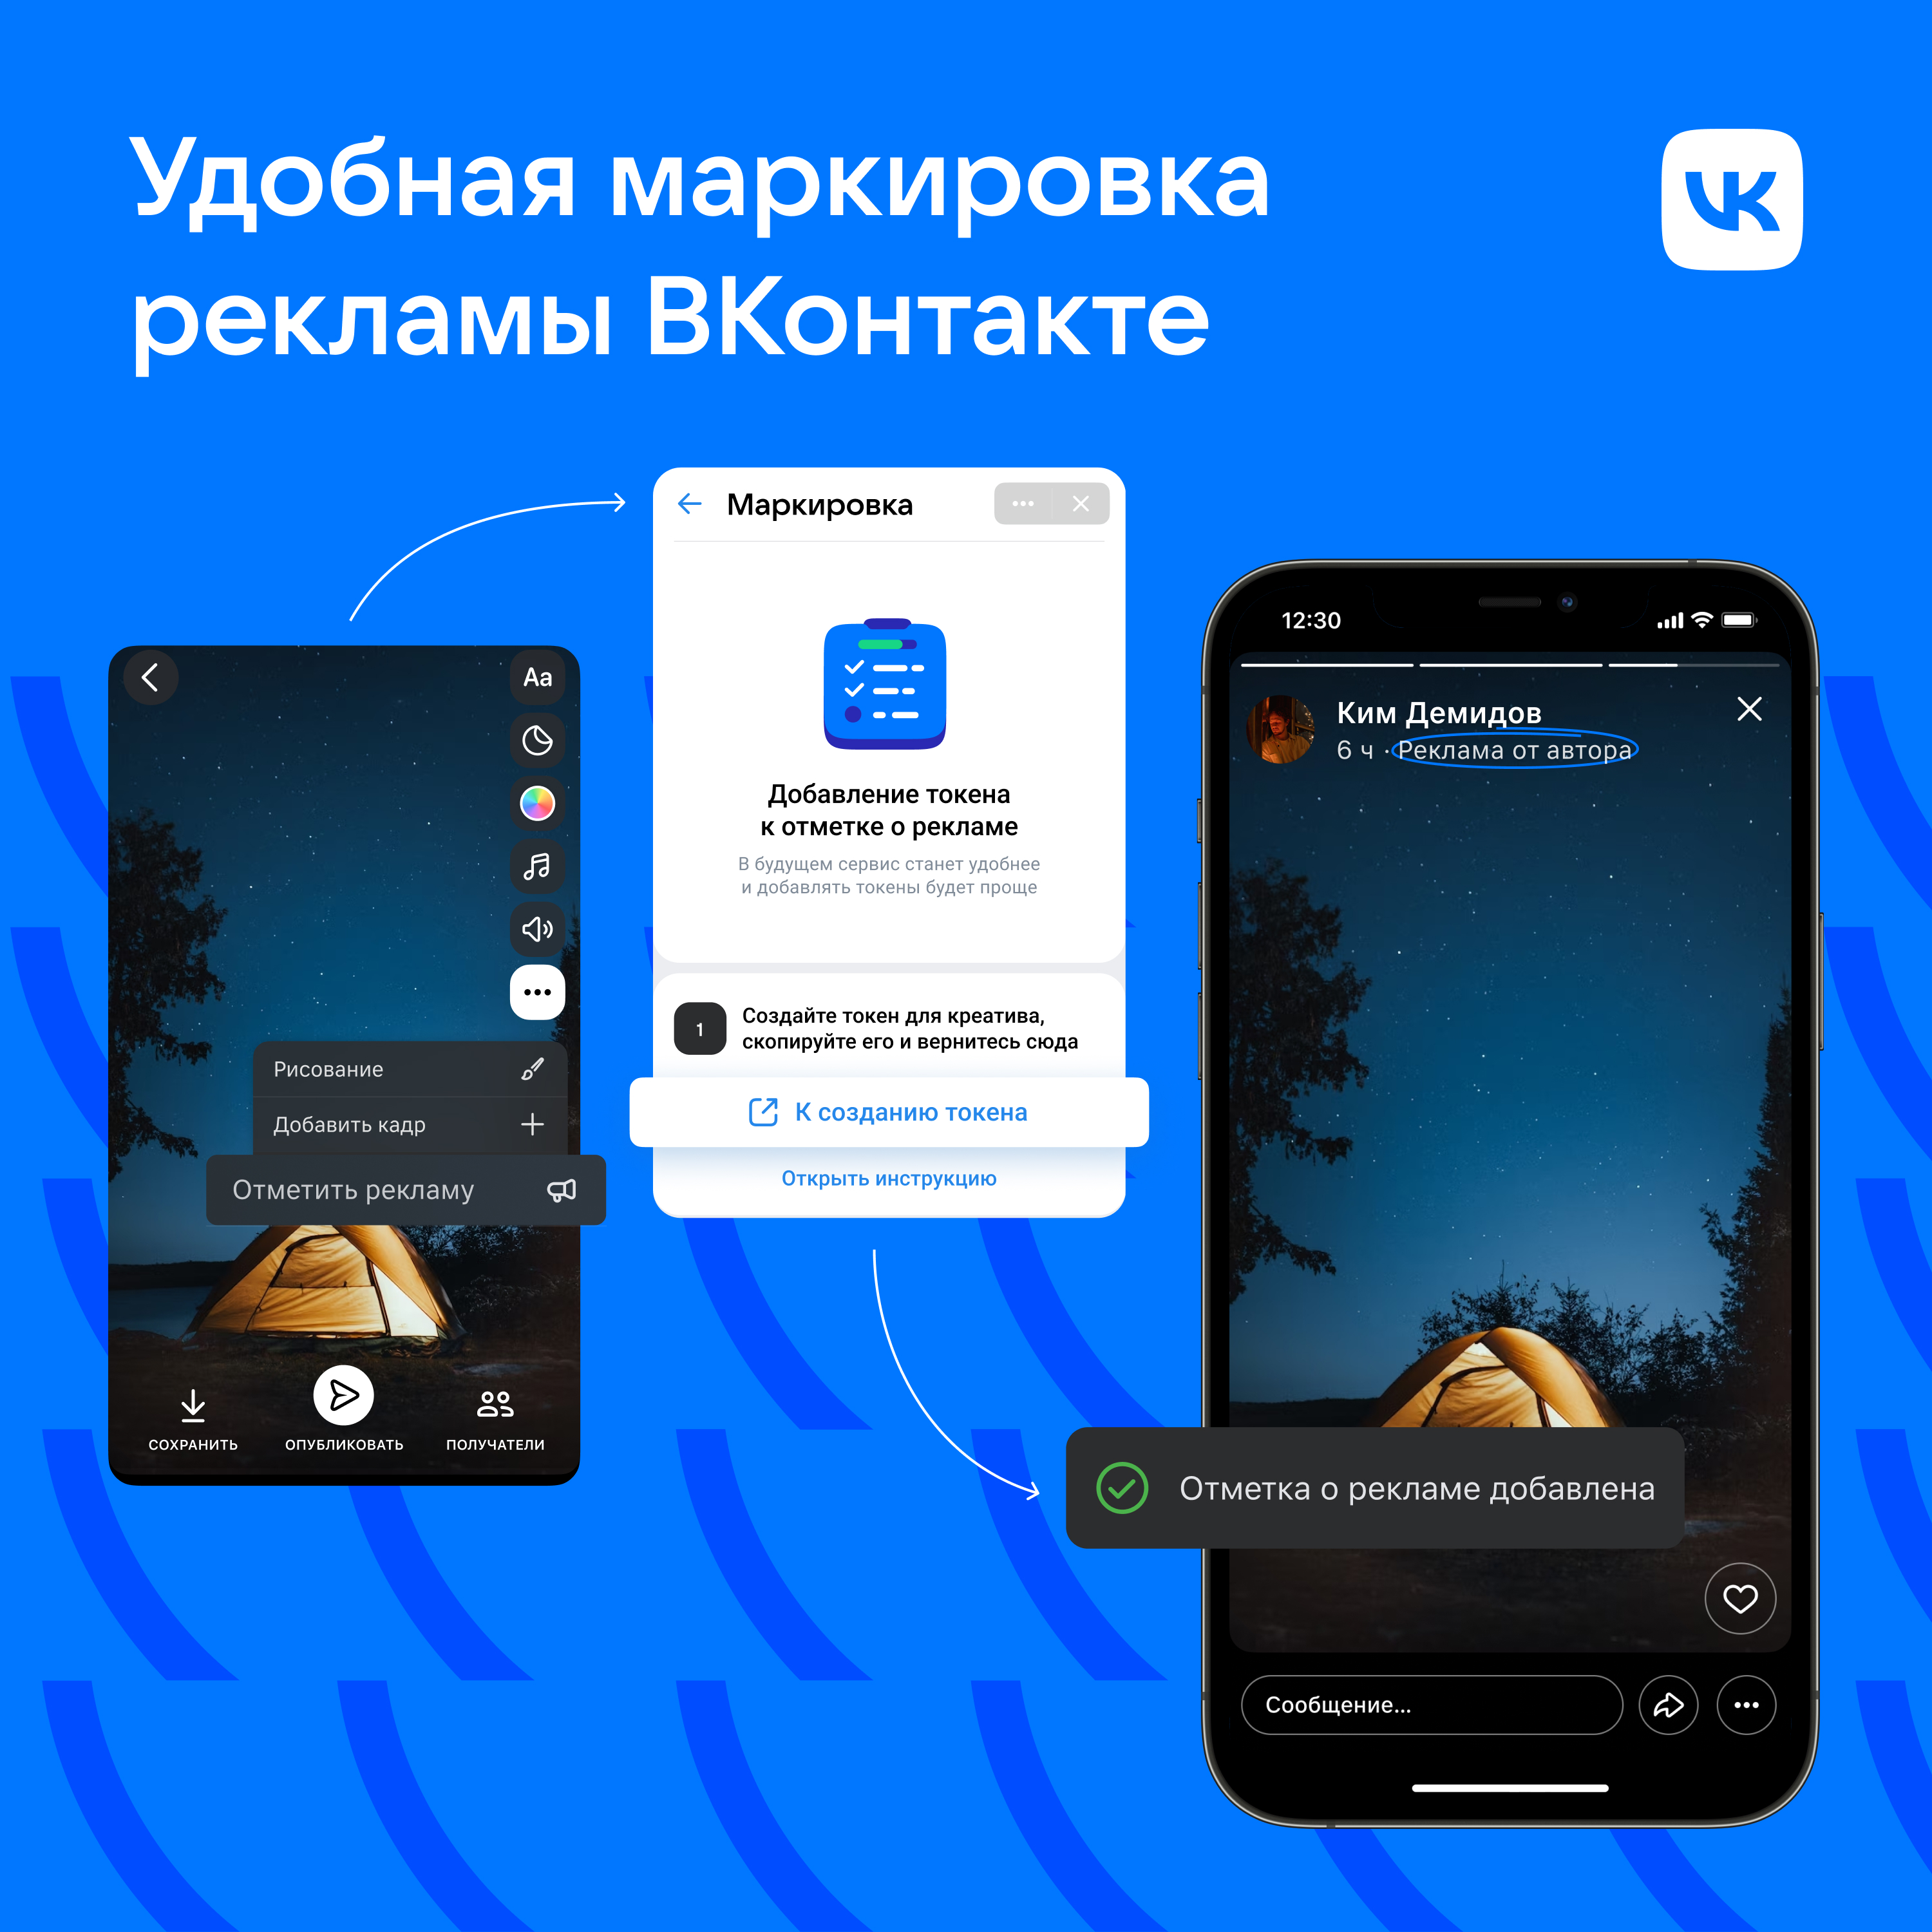 ВКонтакте Маркировка.jpg